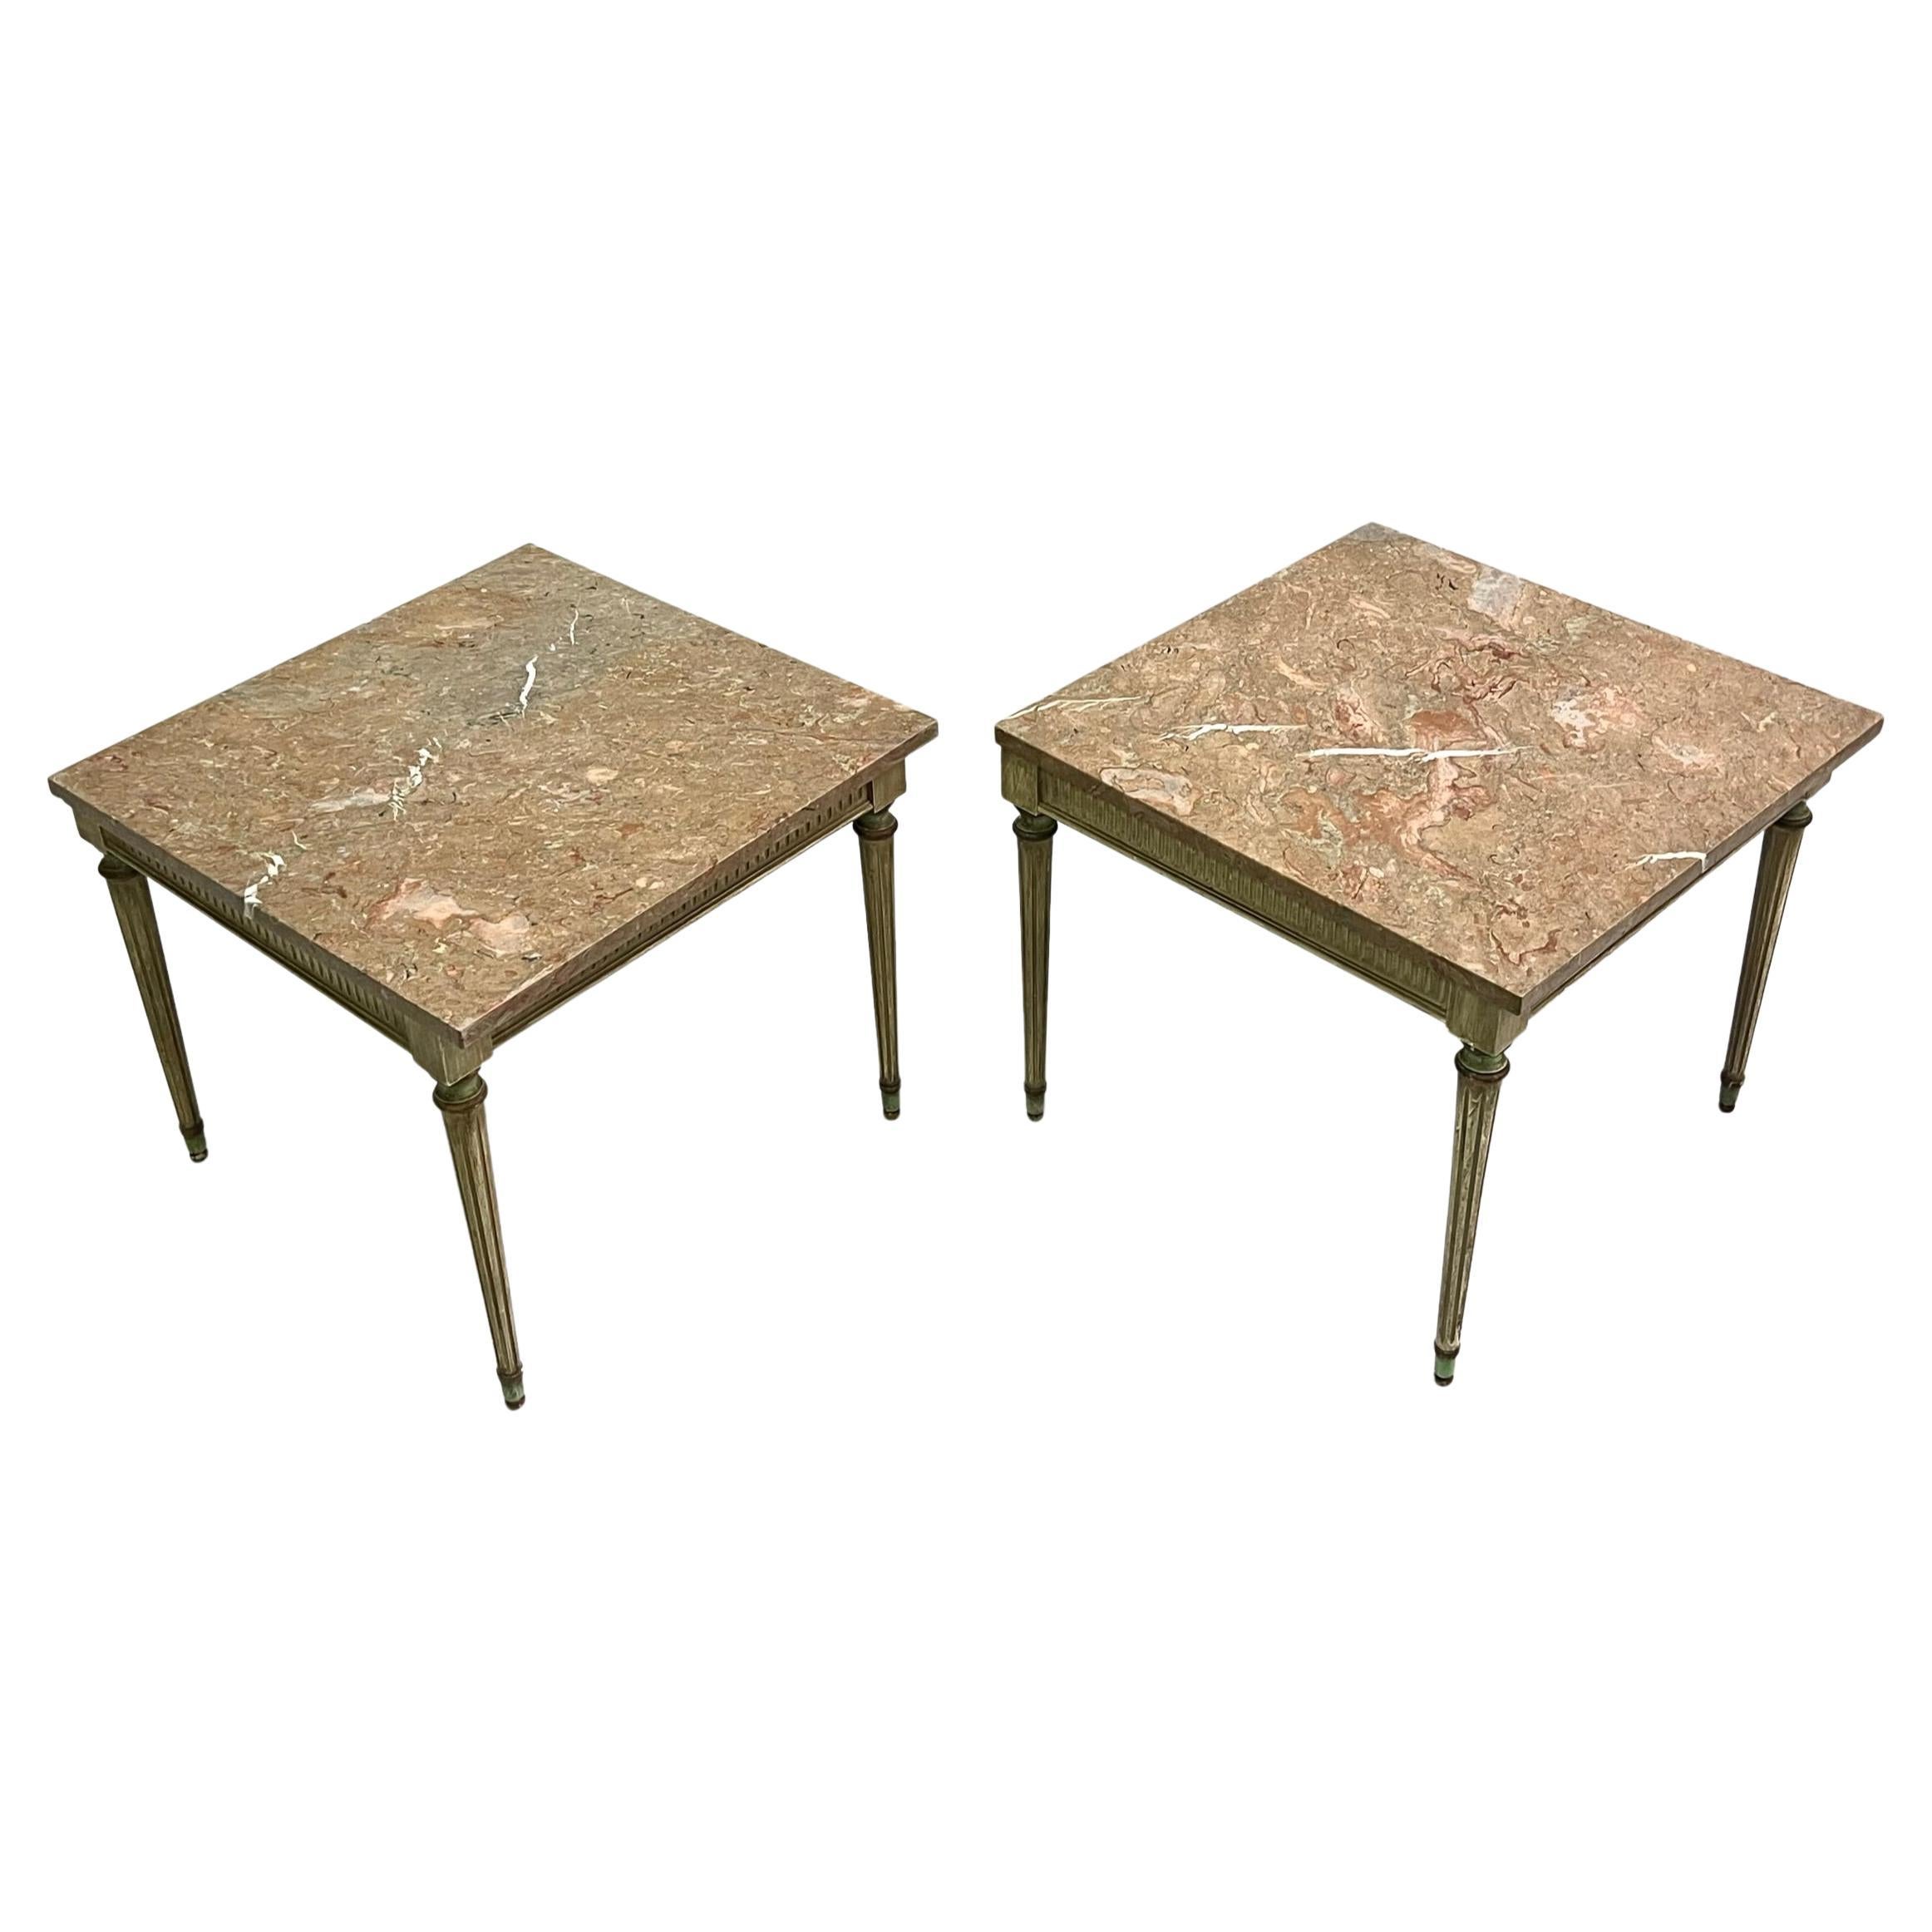 Paire de tables d'appoint néoclassiques françaises modernes en bois peint et marbre, Maison Jansen